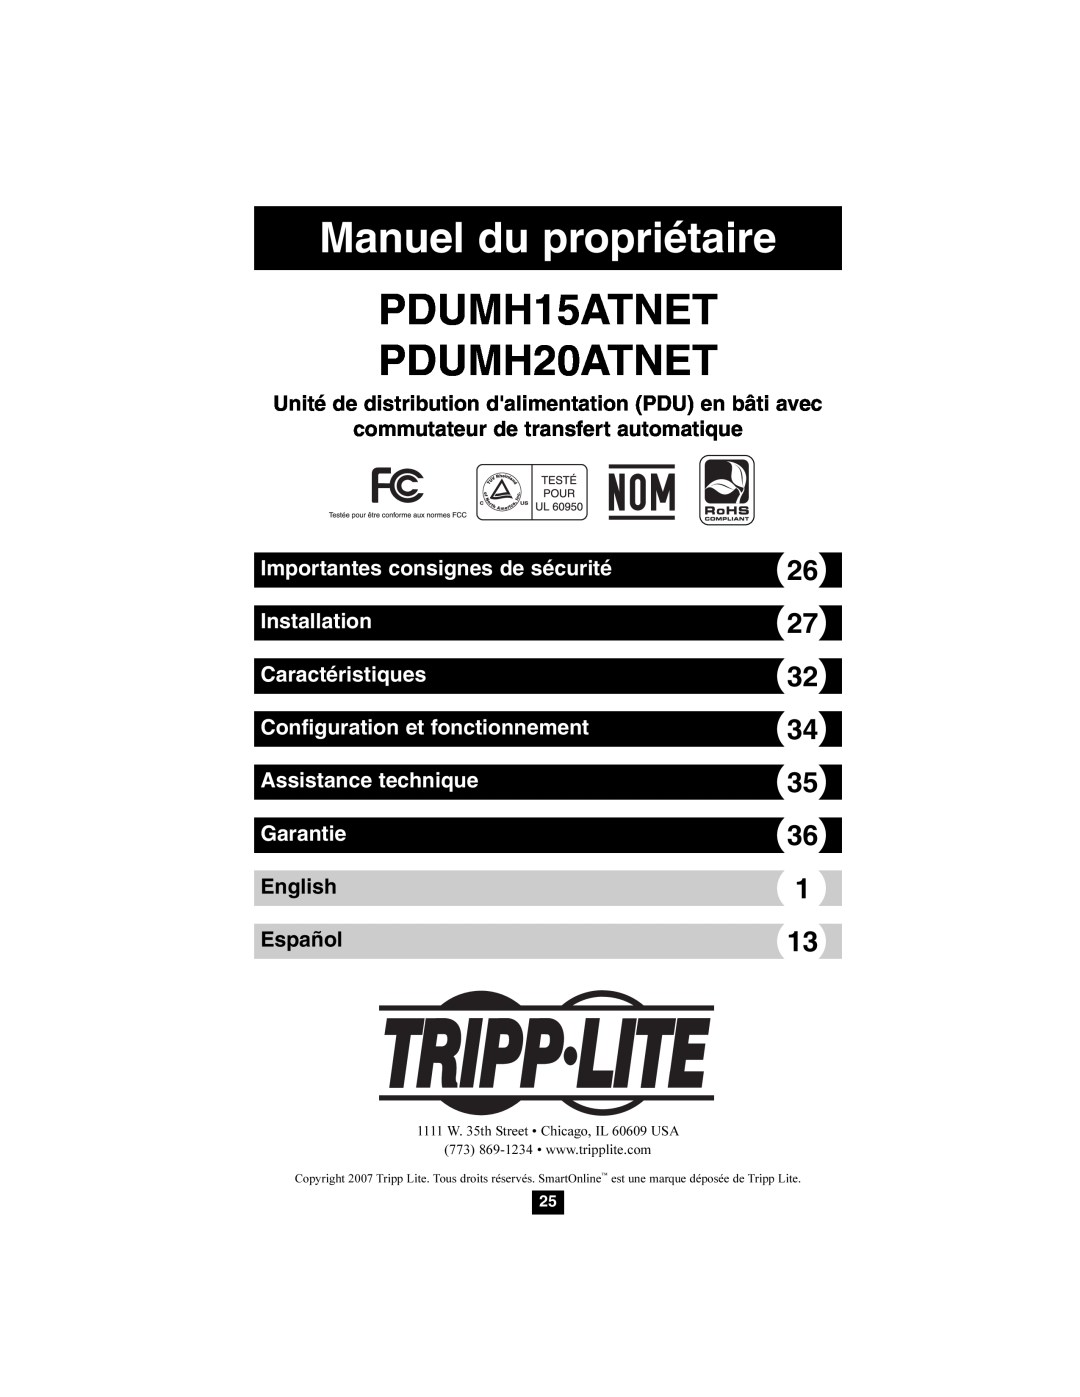 Tripp Lite PDUMH15ATNET Manuel du propriétaire, Unité de distribution dalimentation PDU en bâti avec, English Español 